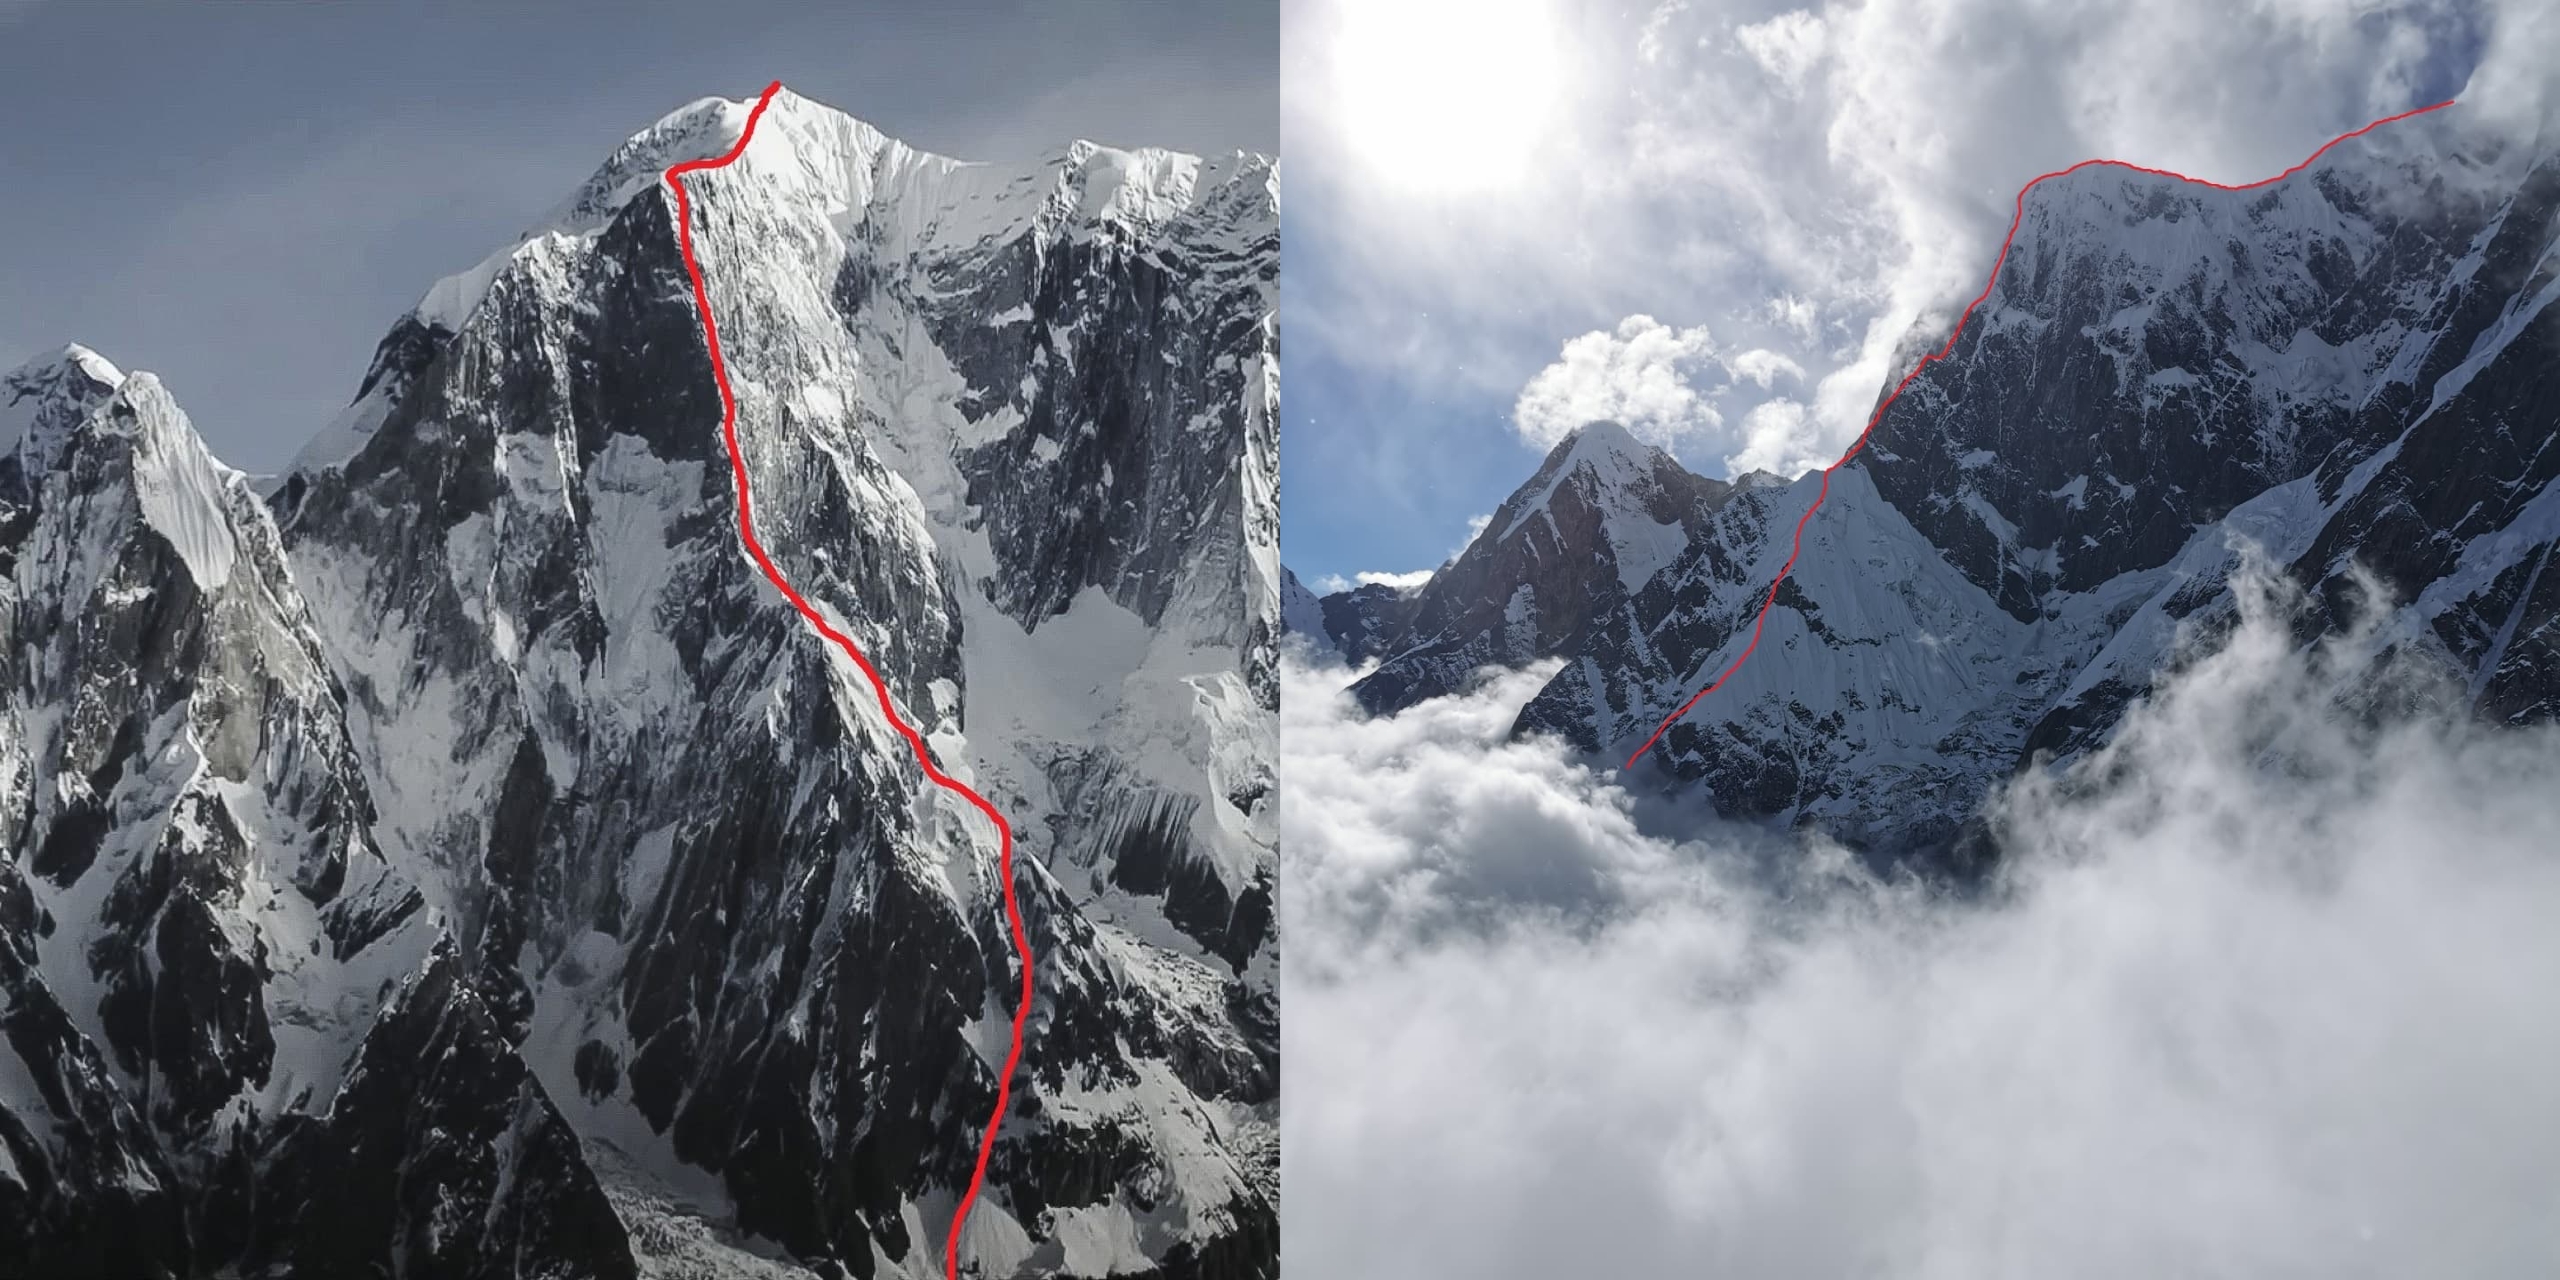 маршрут «Терпение» ("Patience") по юго-восточному гребню на вершину Аннапурна III ( Annapurna III 7555 метров) в Непале!